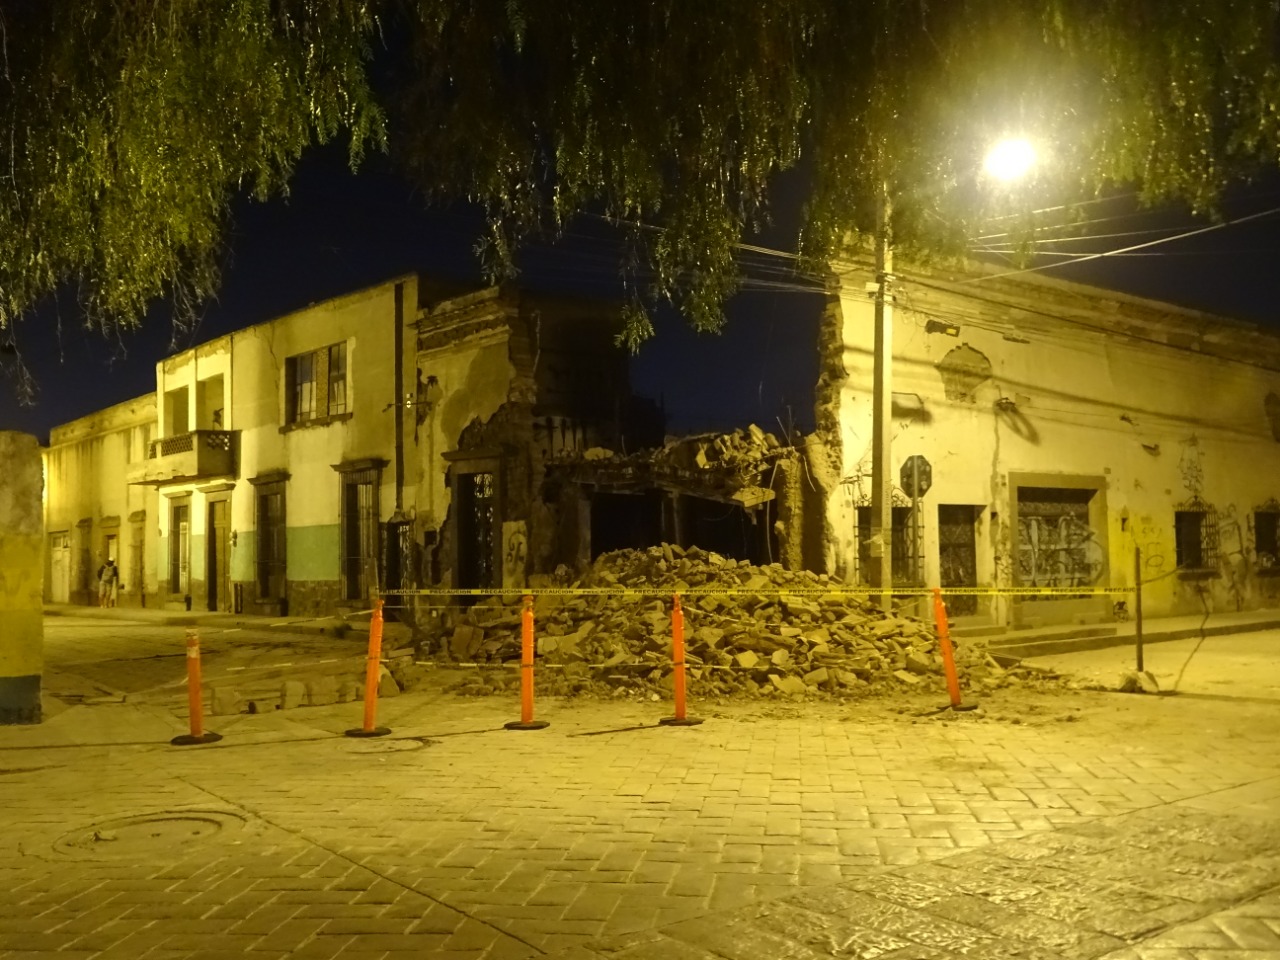  De Gallardo Cardona, finca que se derrumbó en Centro Histórico